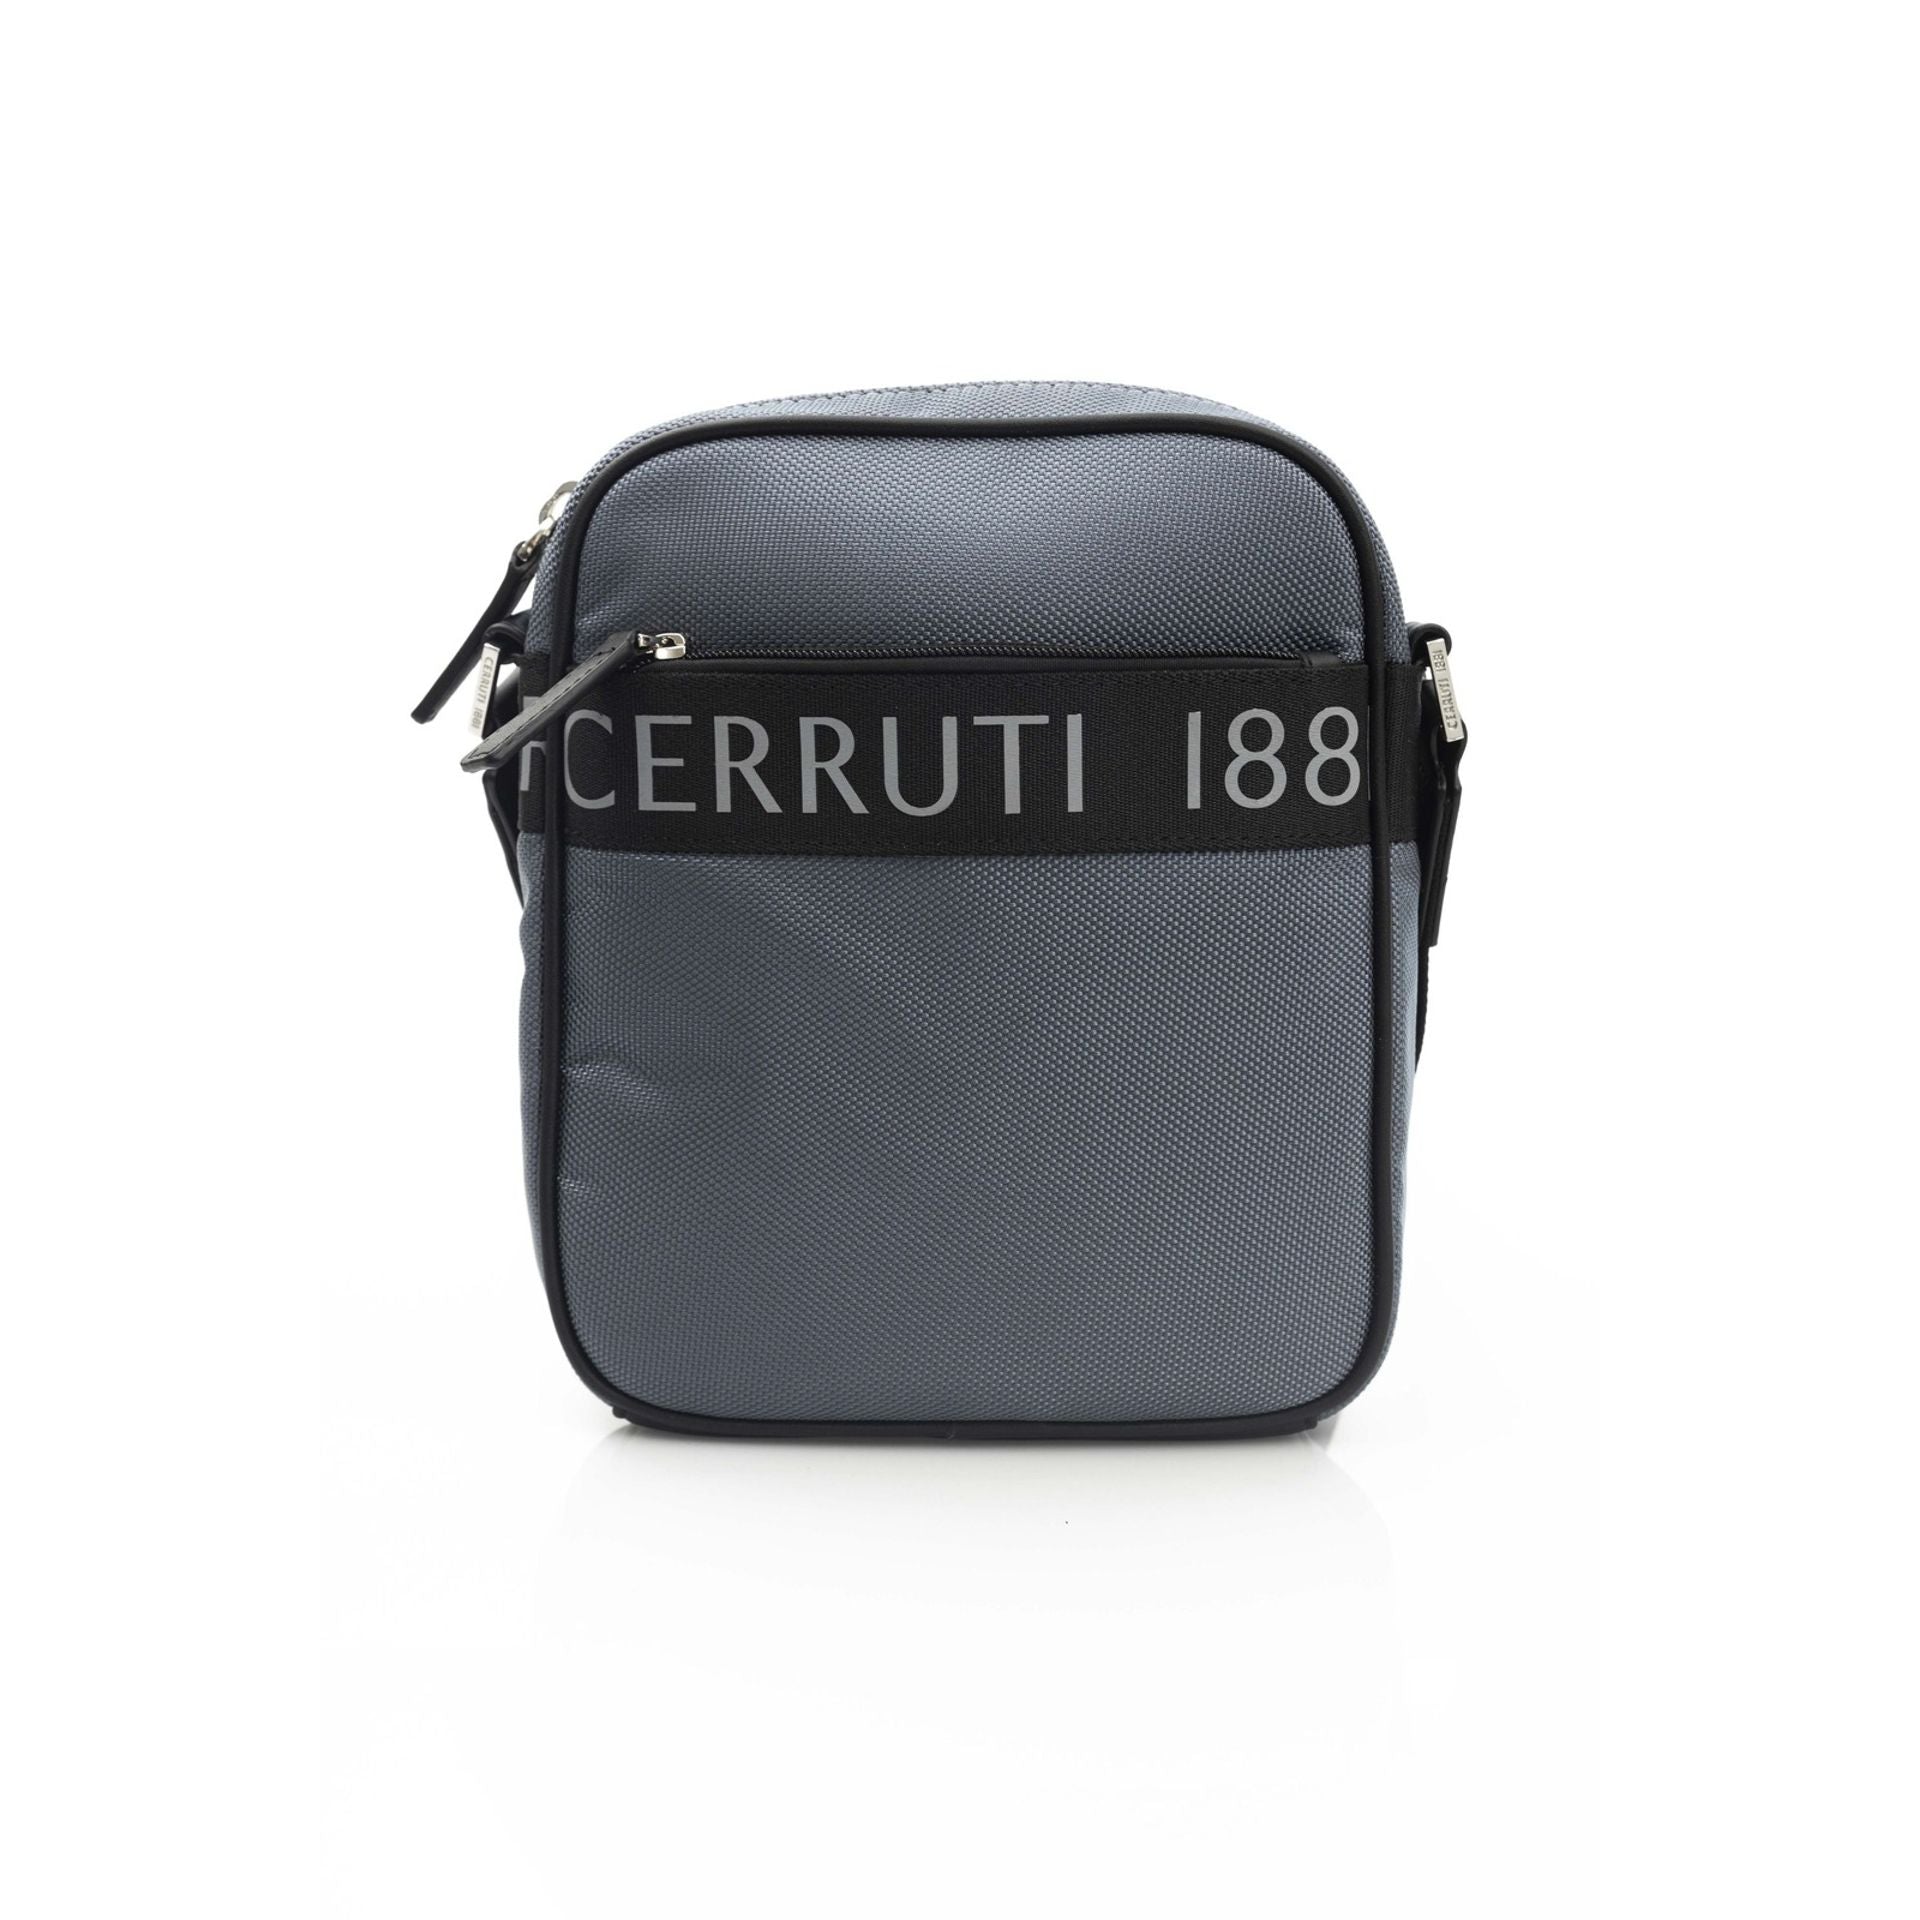 Cerruti 1881 Travel bags